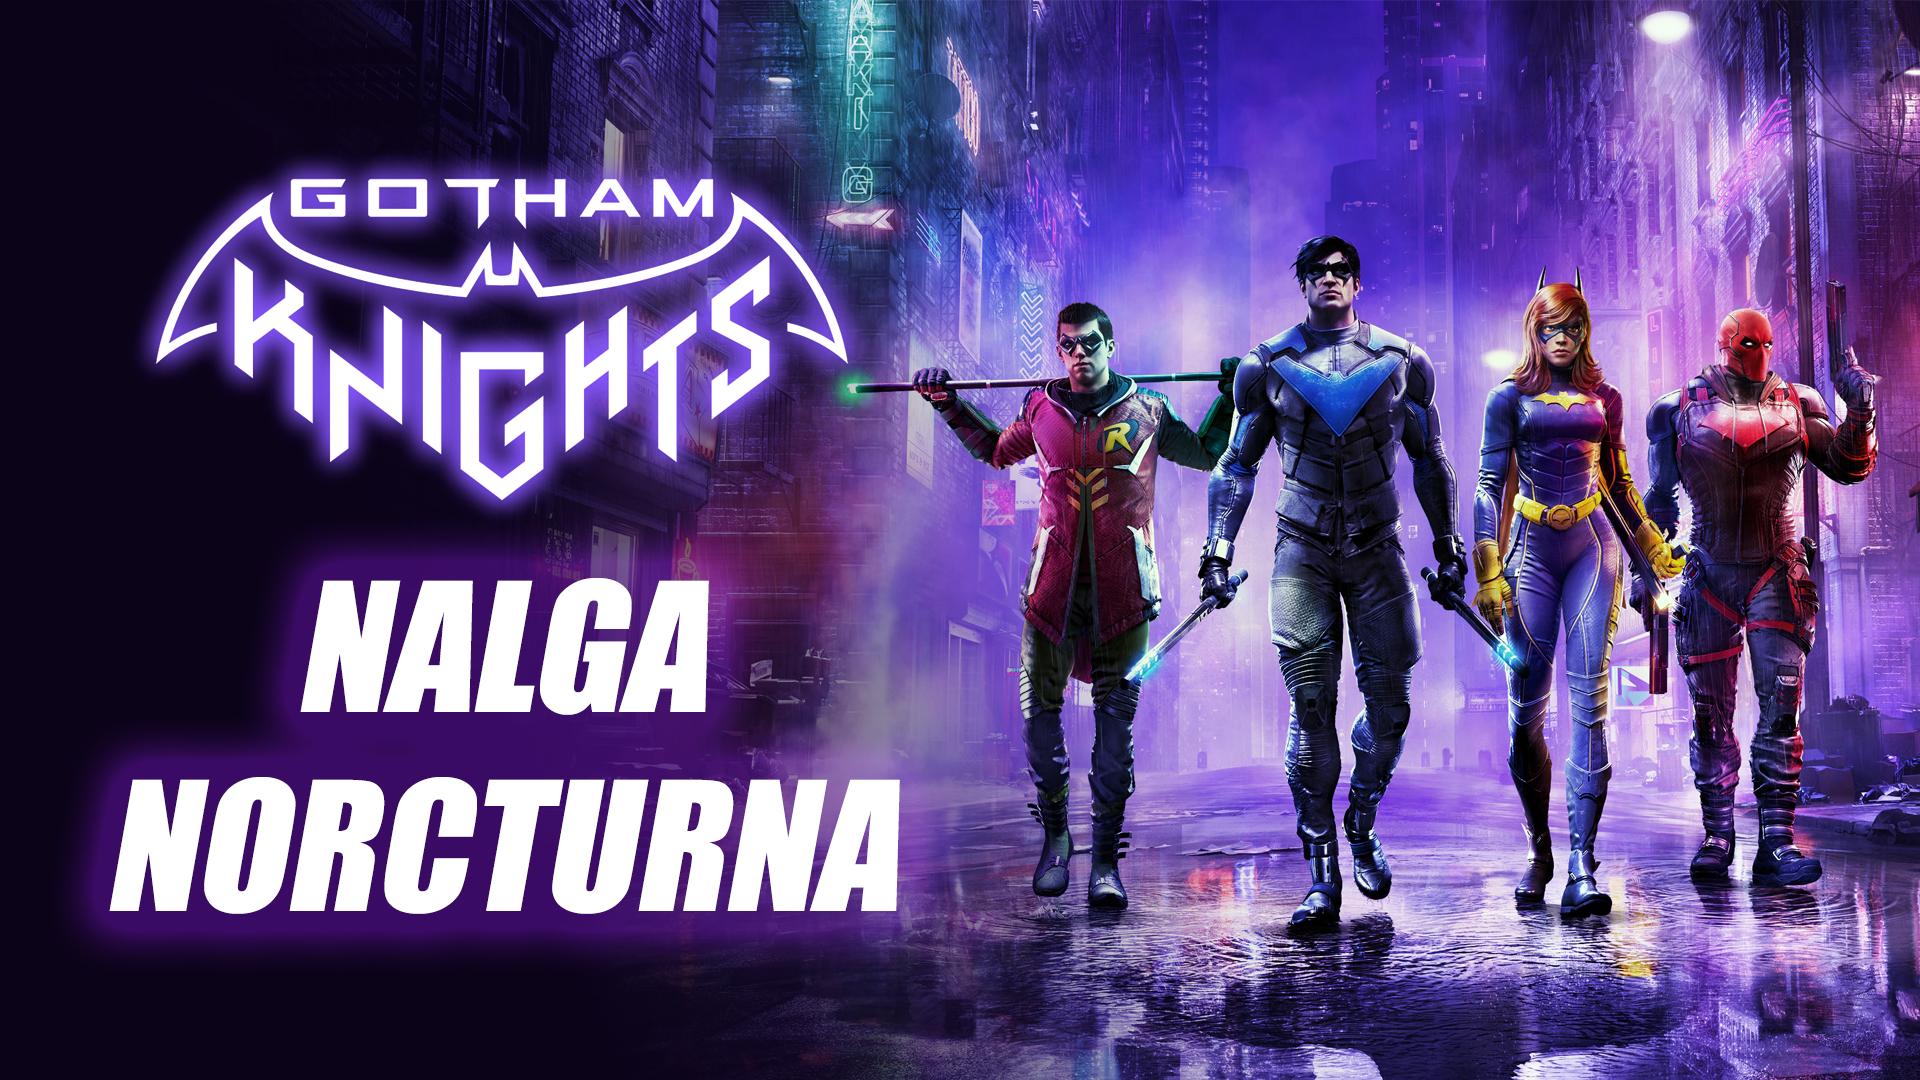 Gotham Knights – Nalga Nocturna